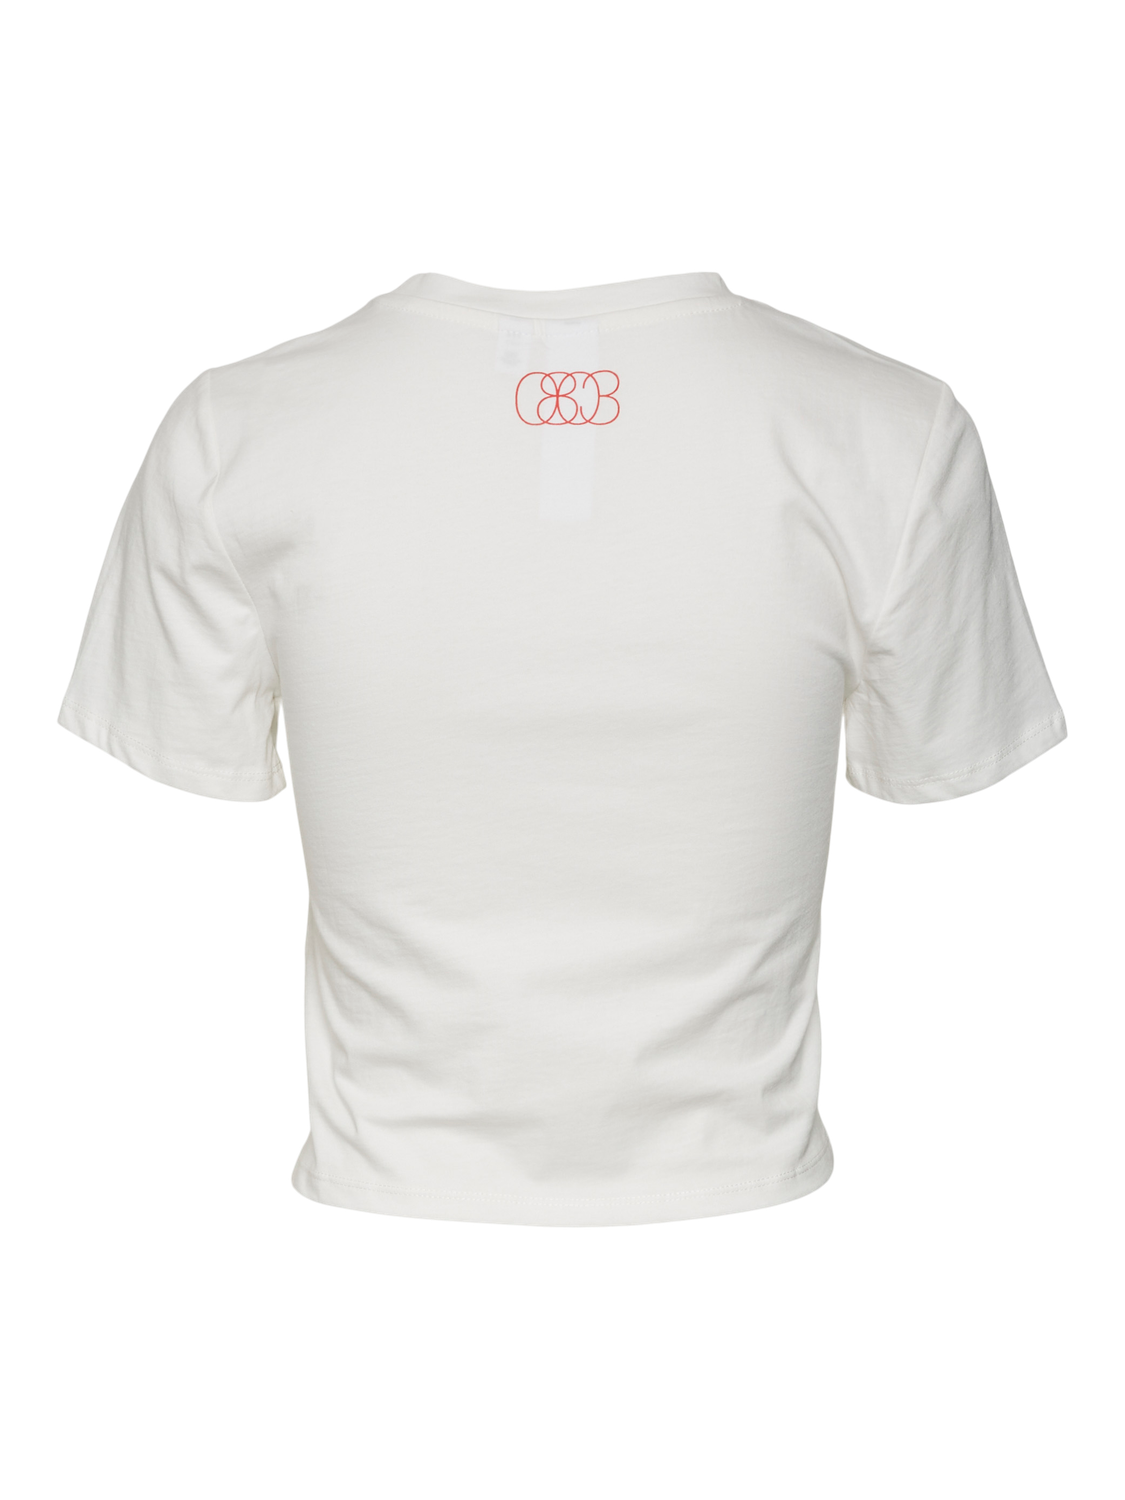 Vero Moda T-Shirt -Star White - 10321732